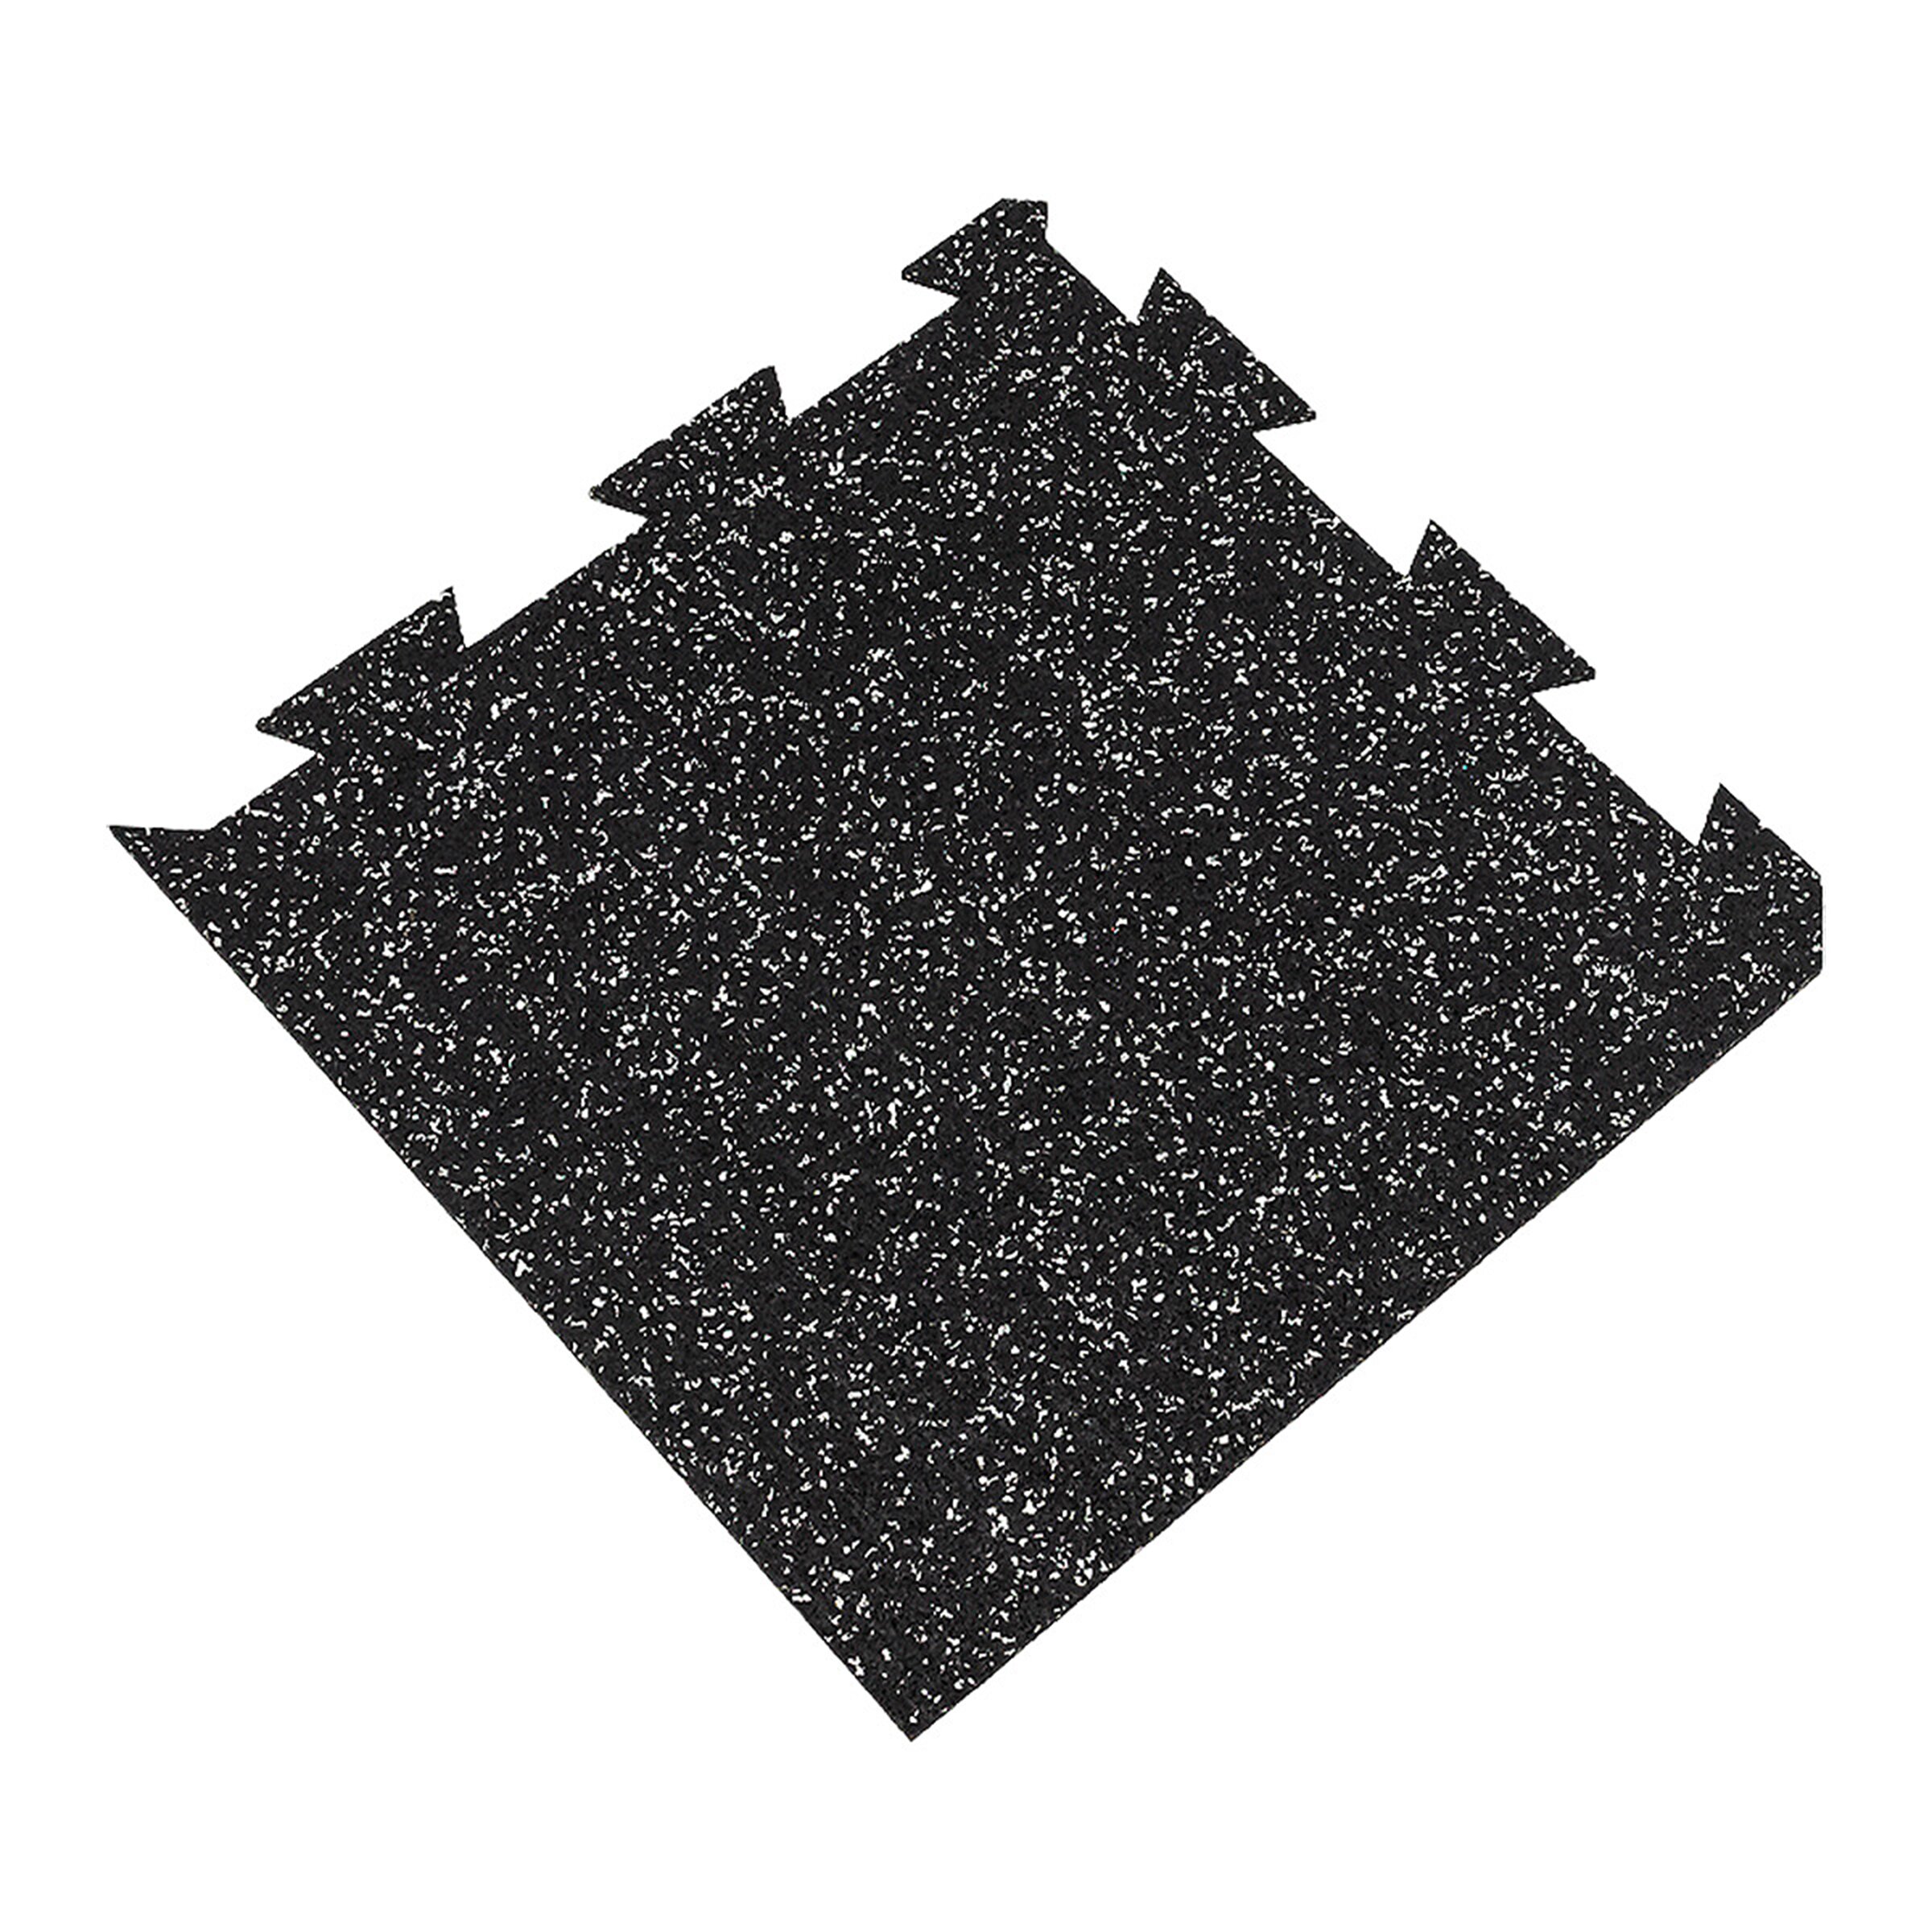 Černo-bílá gumová modulová puzzle dlažba FLOMA FitFlo SF1050 - délka 50 cm, šířka 50 cm, výška 1,6 cm